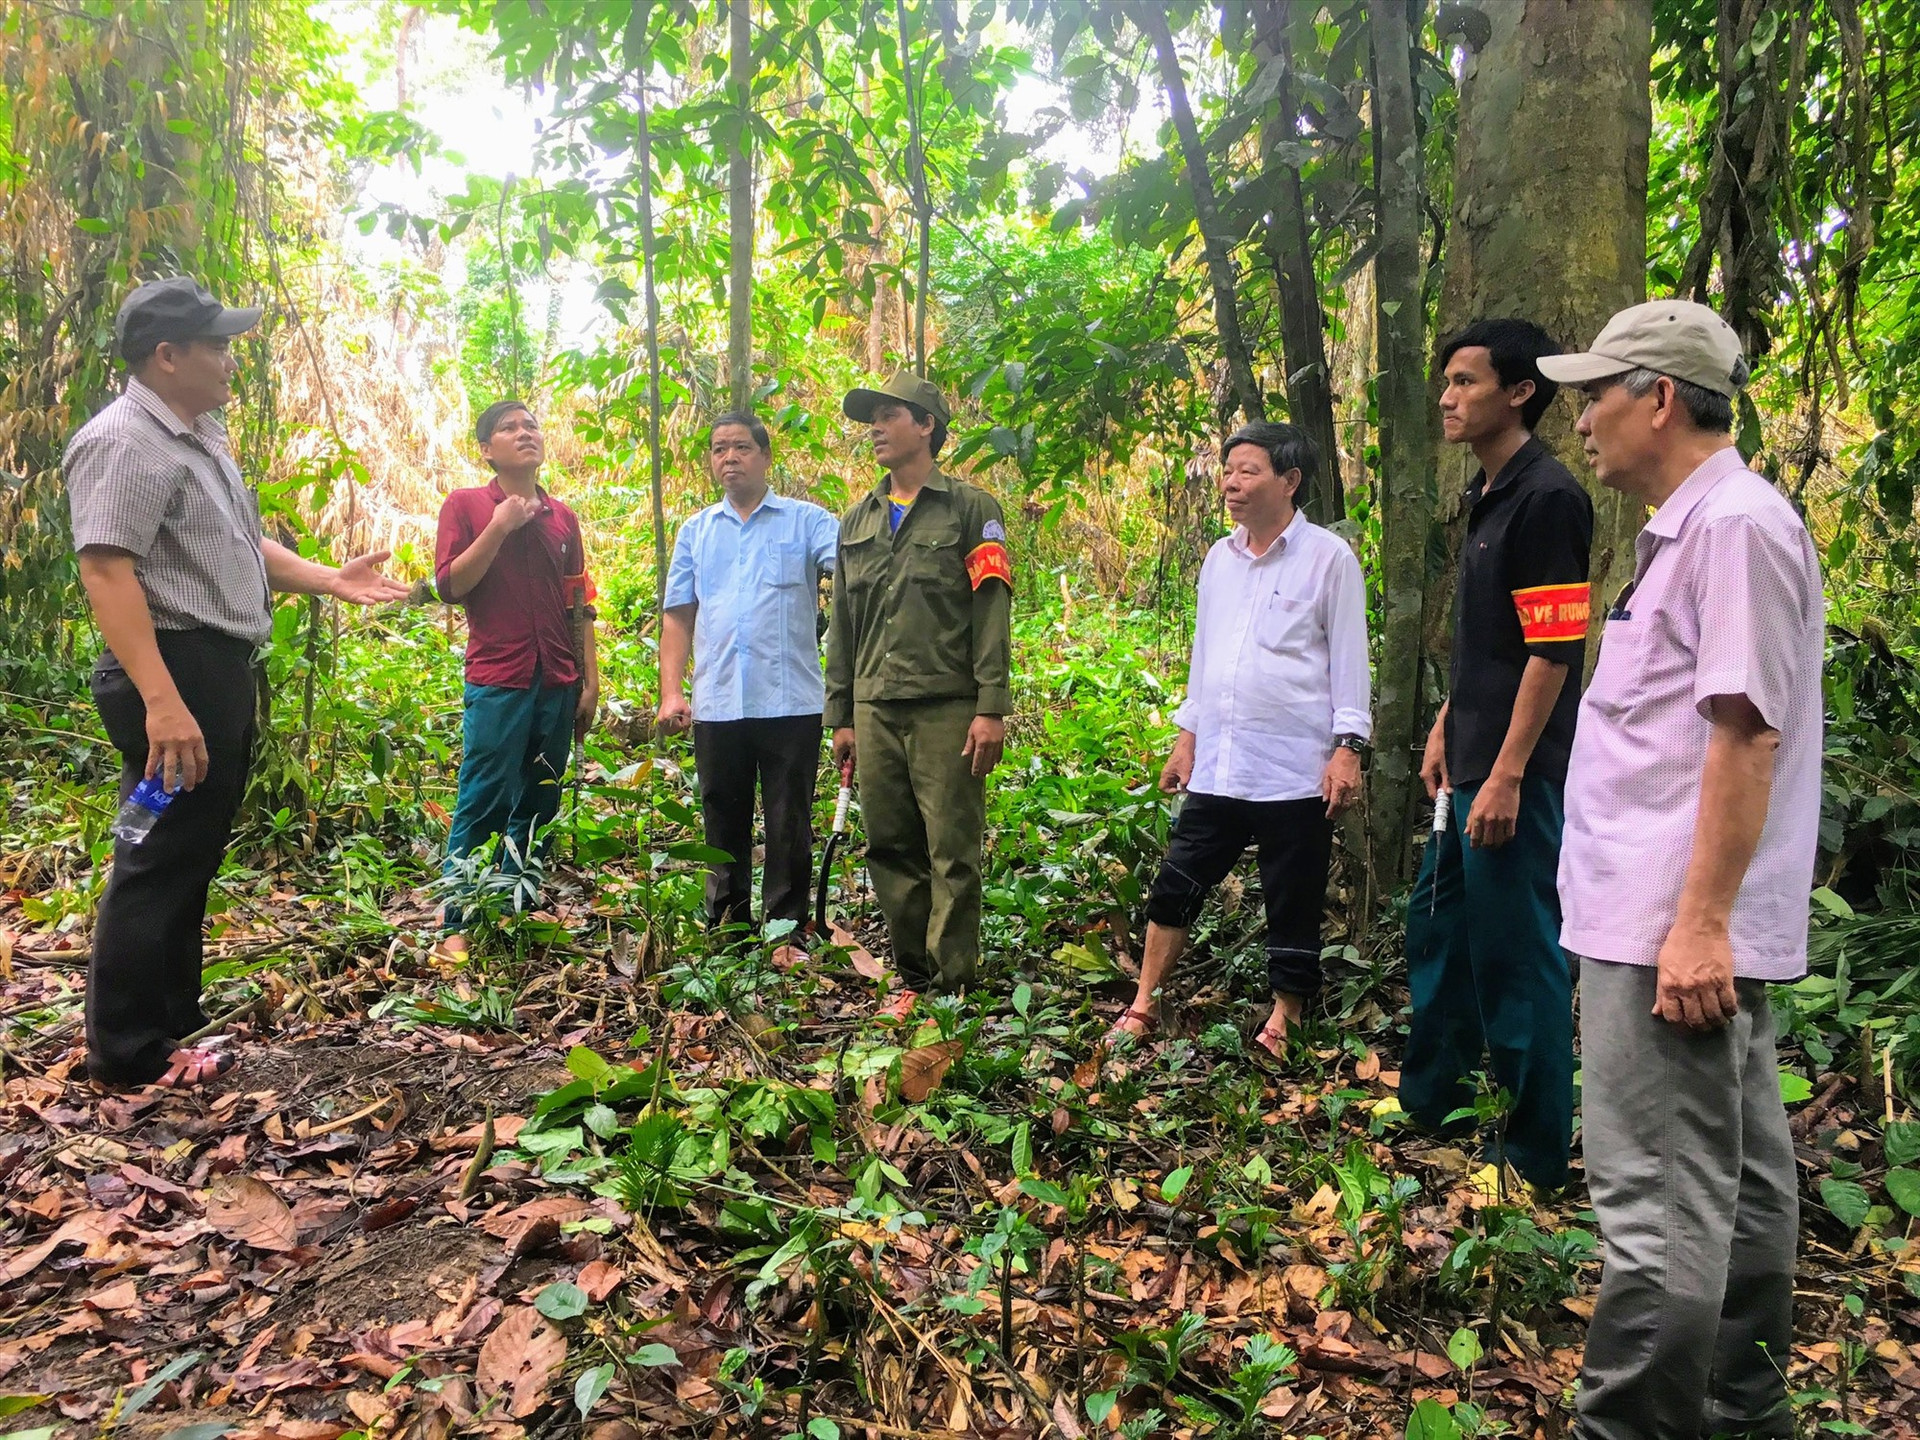 Giao cho hộ dân bảo vệ rừng và phát triển sinh kế dưới tán rừng là cách làm phù hợp để thoát nghèo bền vững ở miền núi.